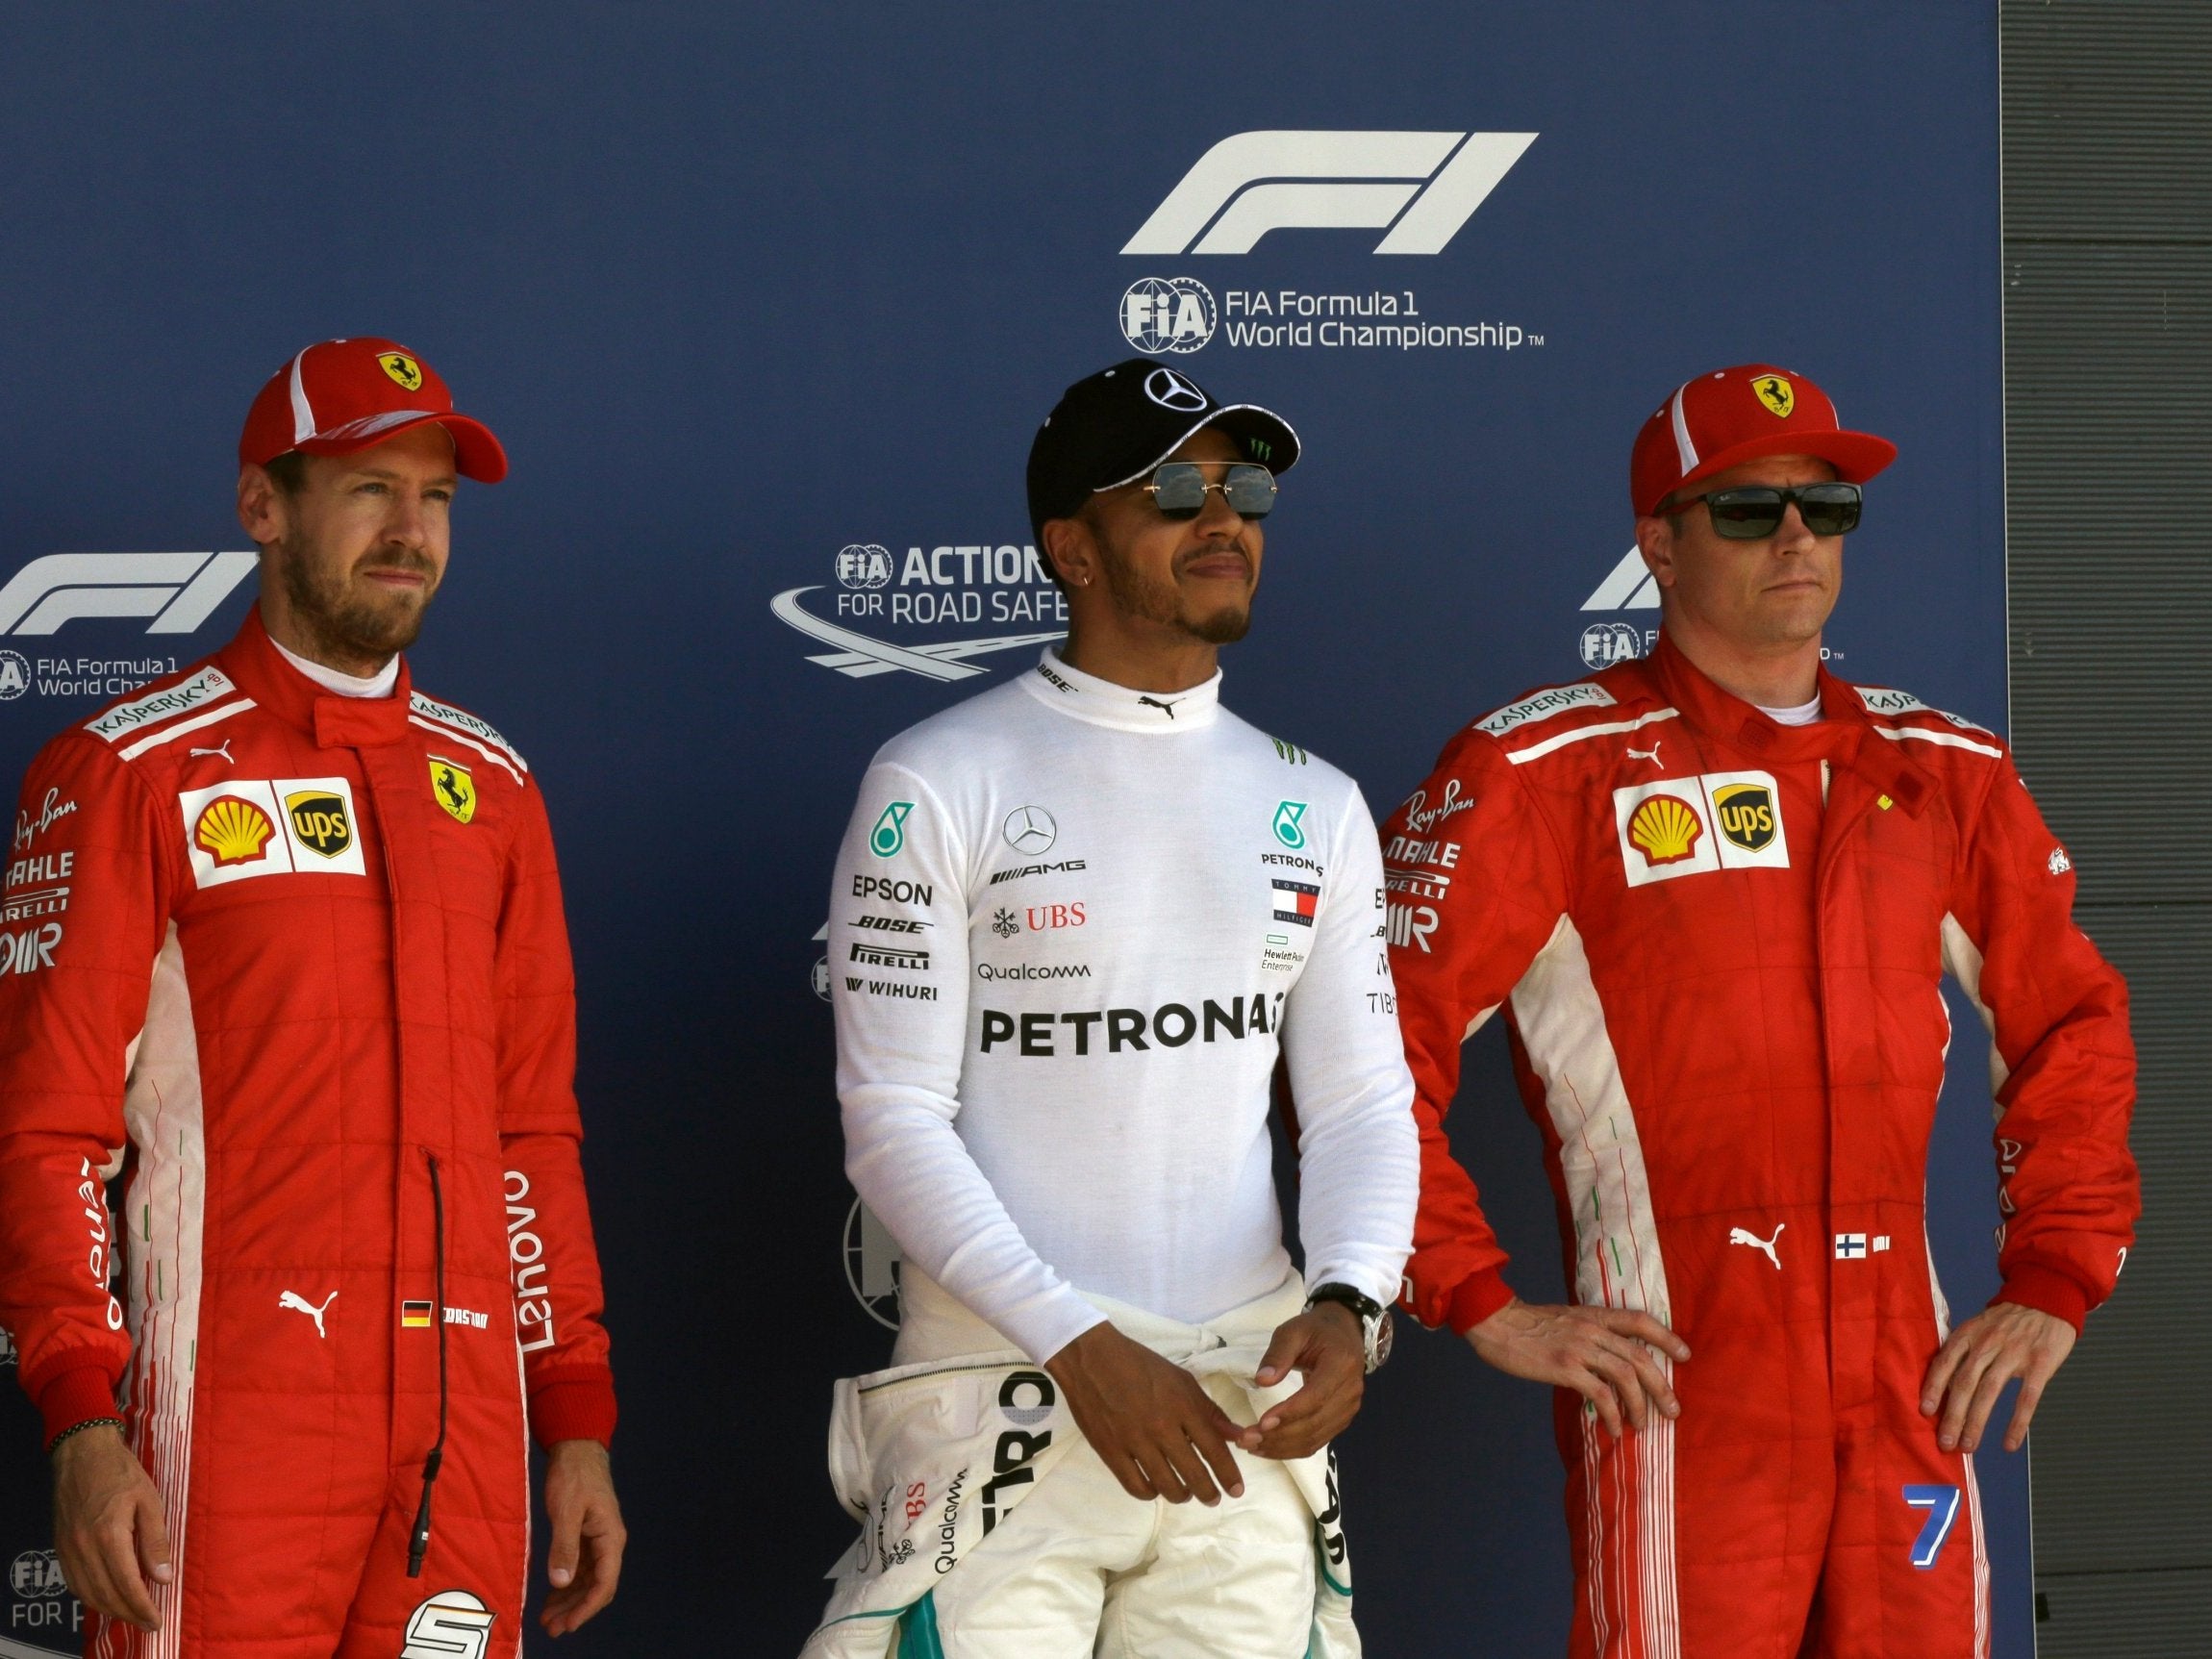 Lewis Hamilton will start ahead of the Ferraris of Sebastian Vettel and Kimi Raikkonen